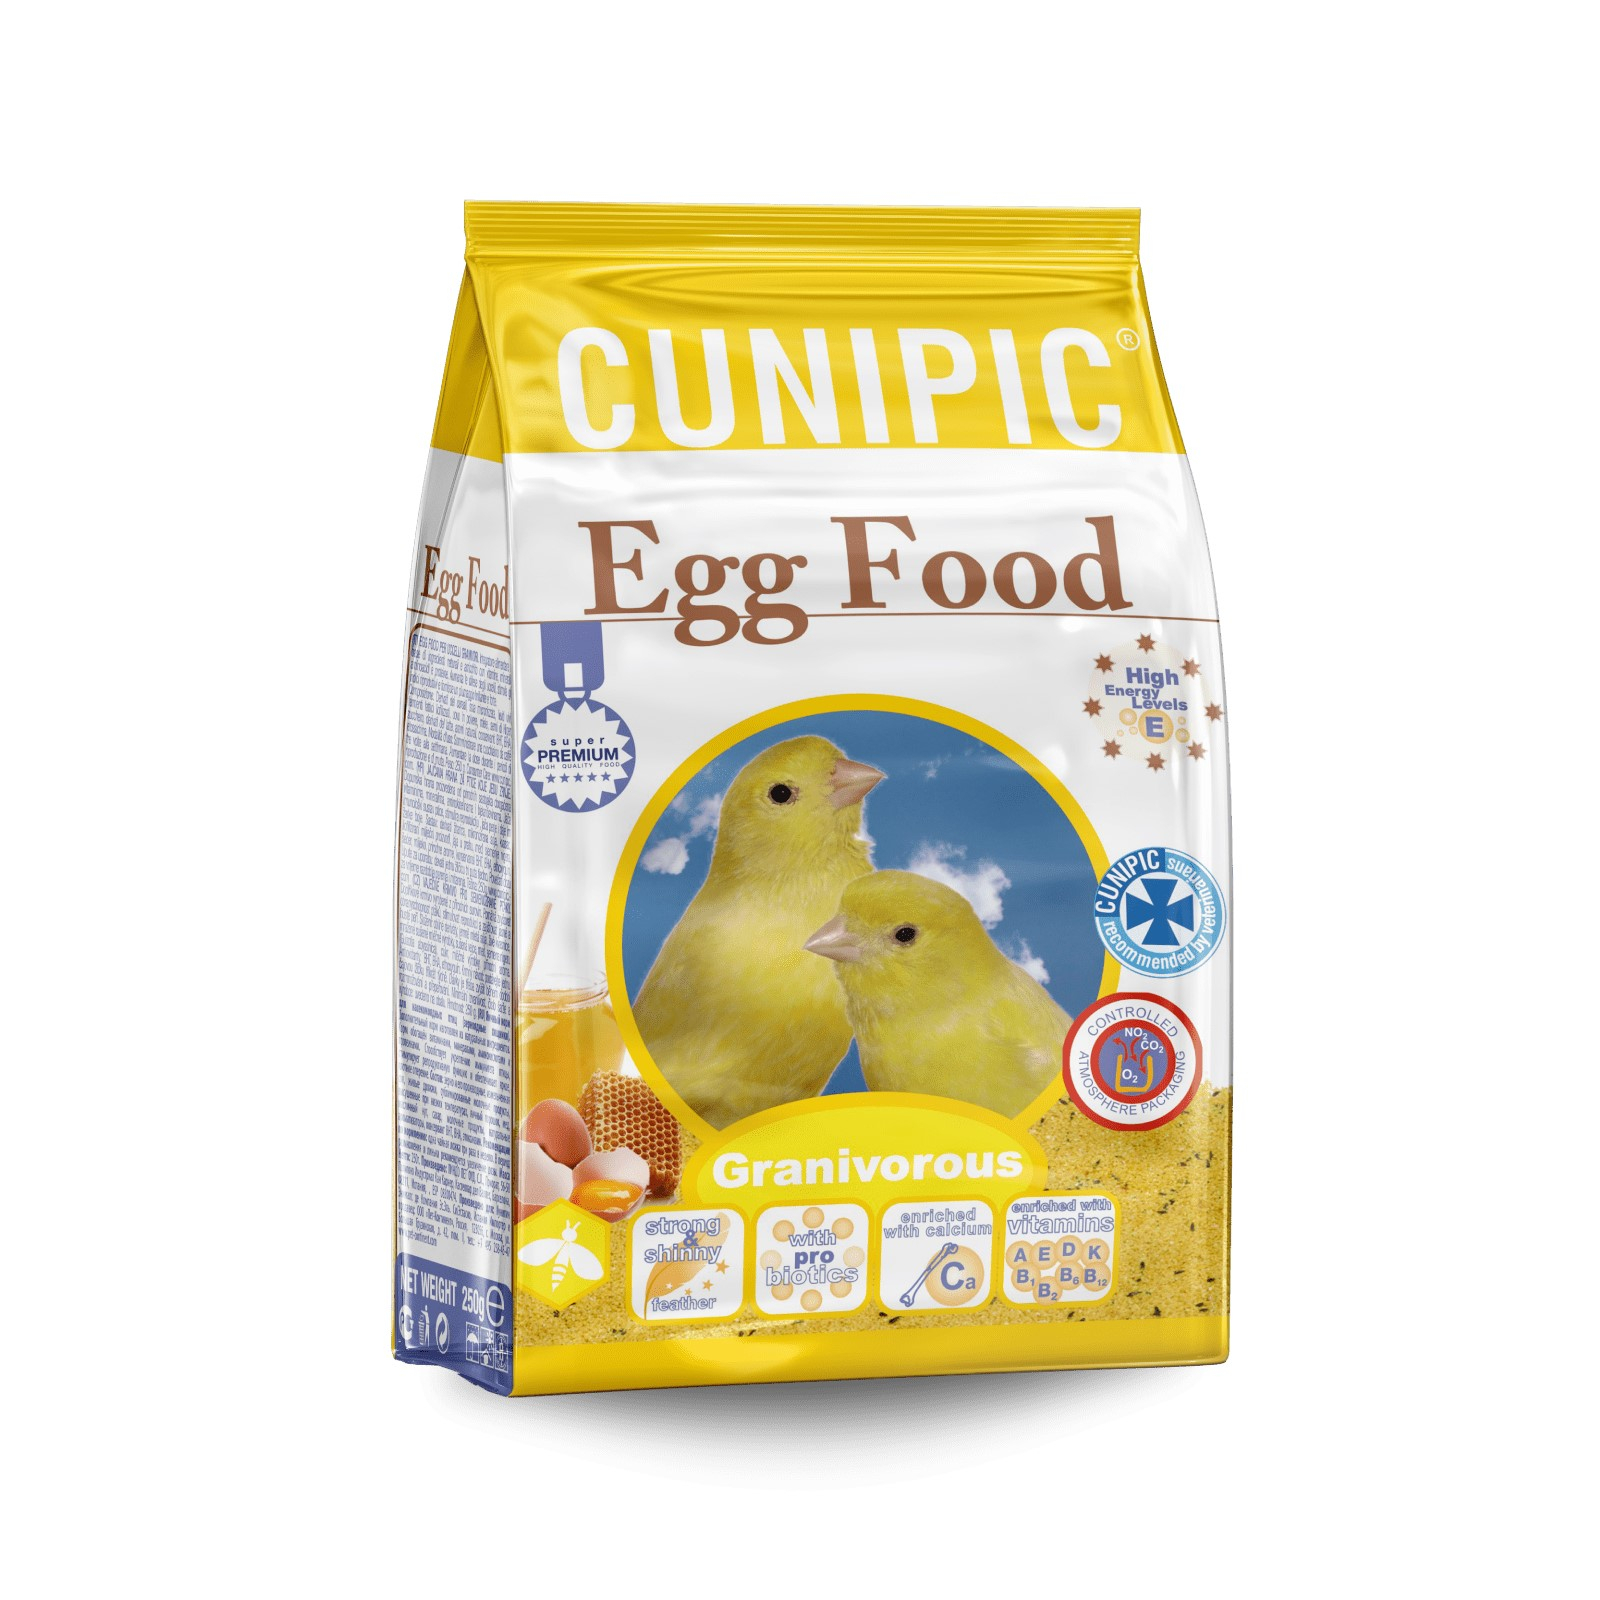 Cunipic Egg Food Pasta de cría amarilla para granívoros